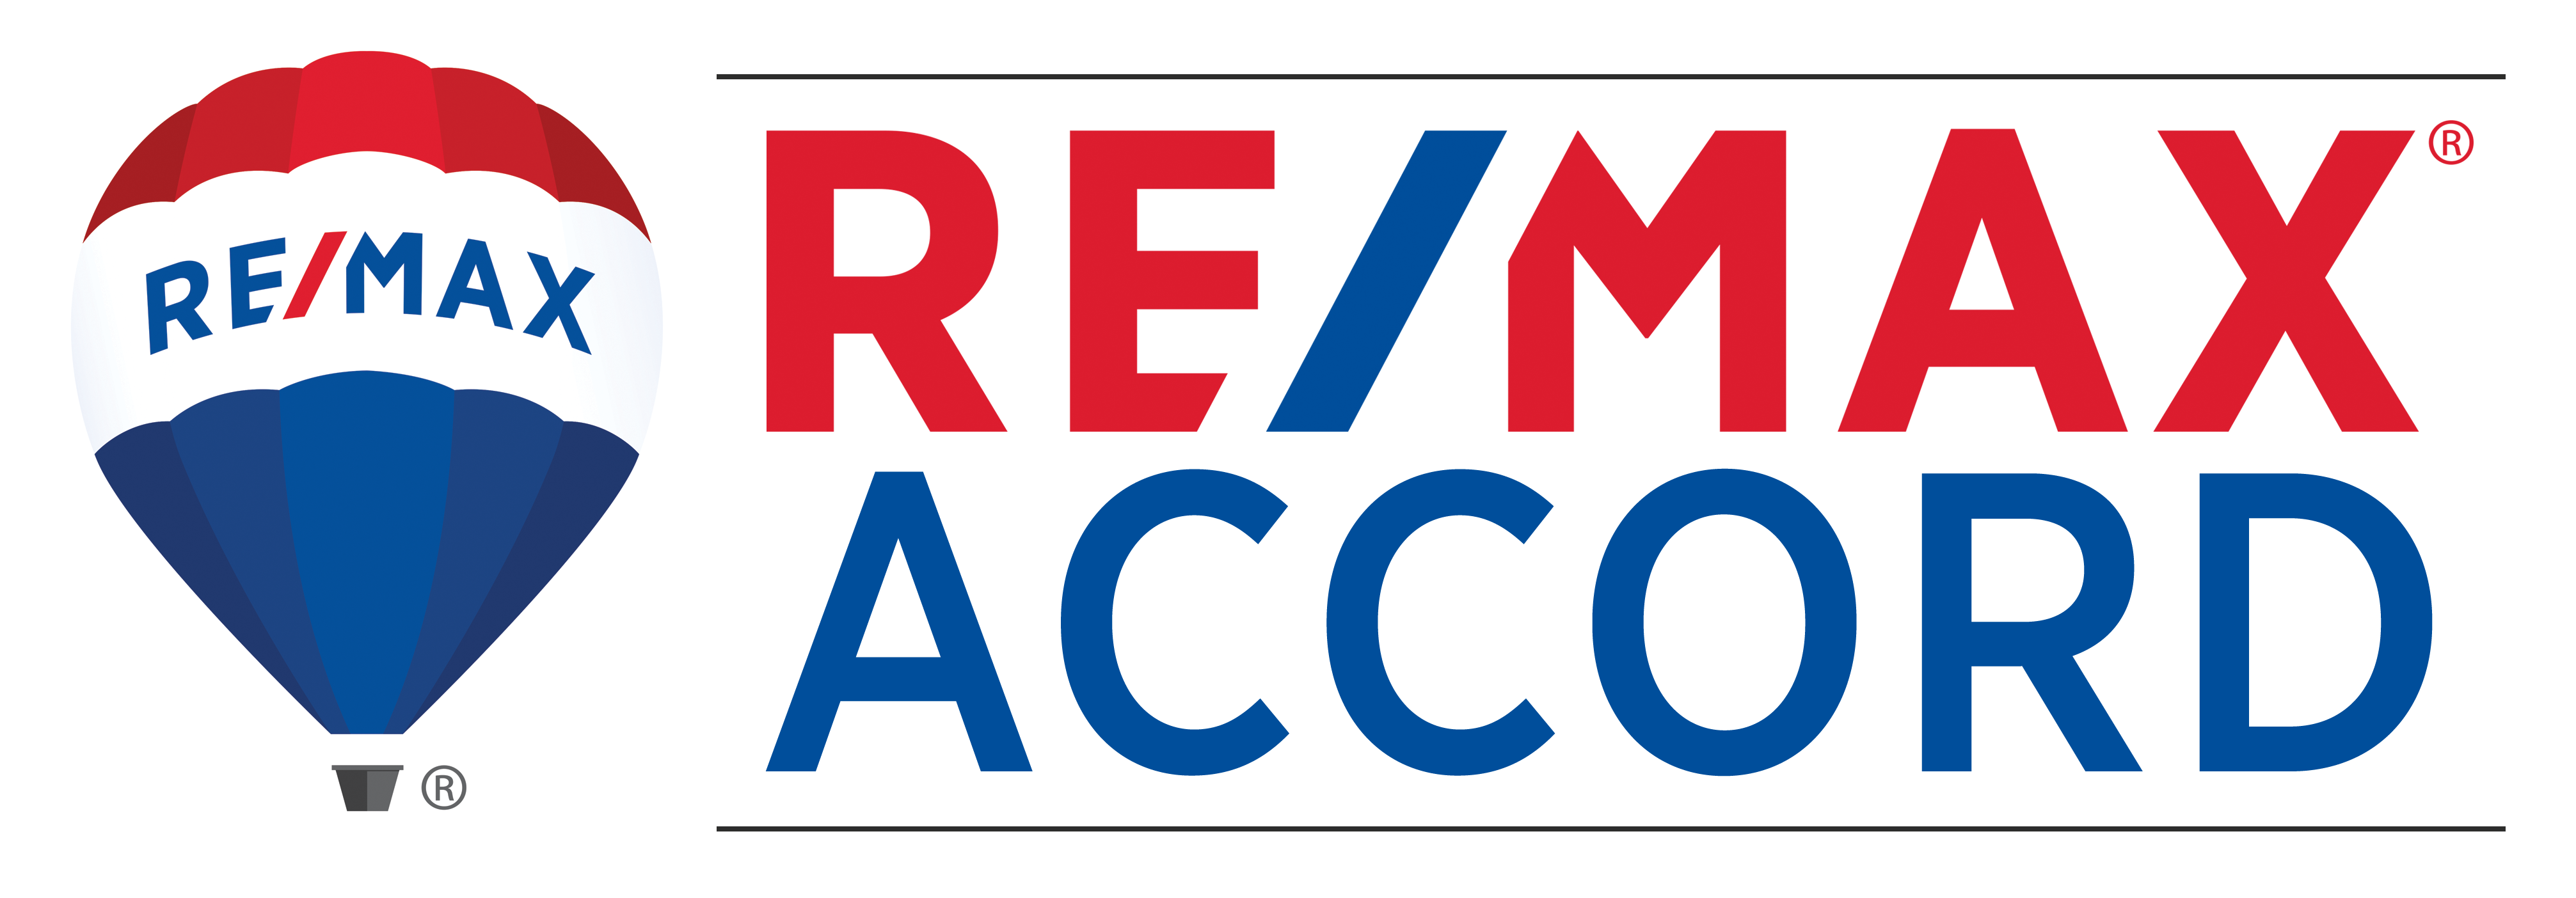 Remax Accord |  License #01291142